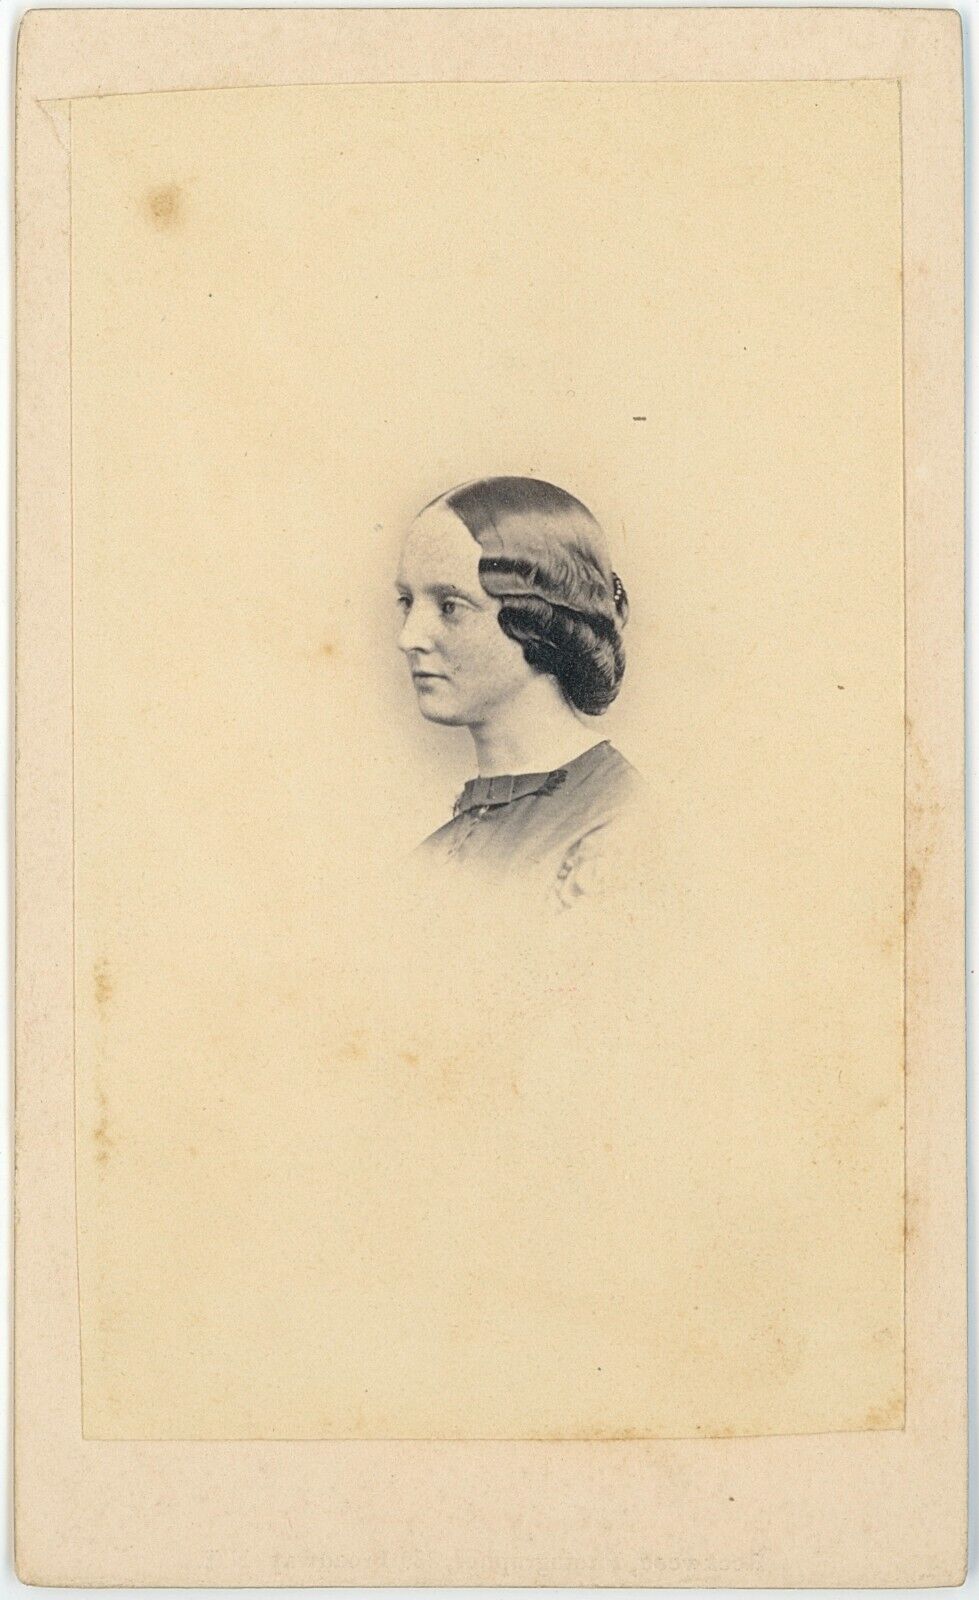 Profile View Pretty Young Lady Vignette New York 1860s CDV Carte de Visite X803